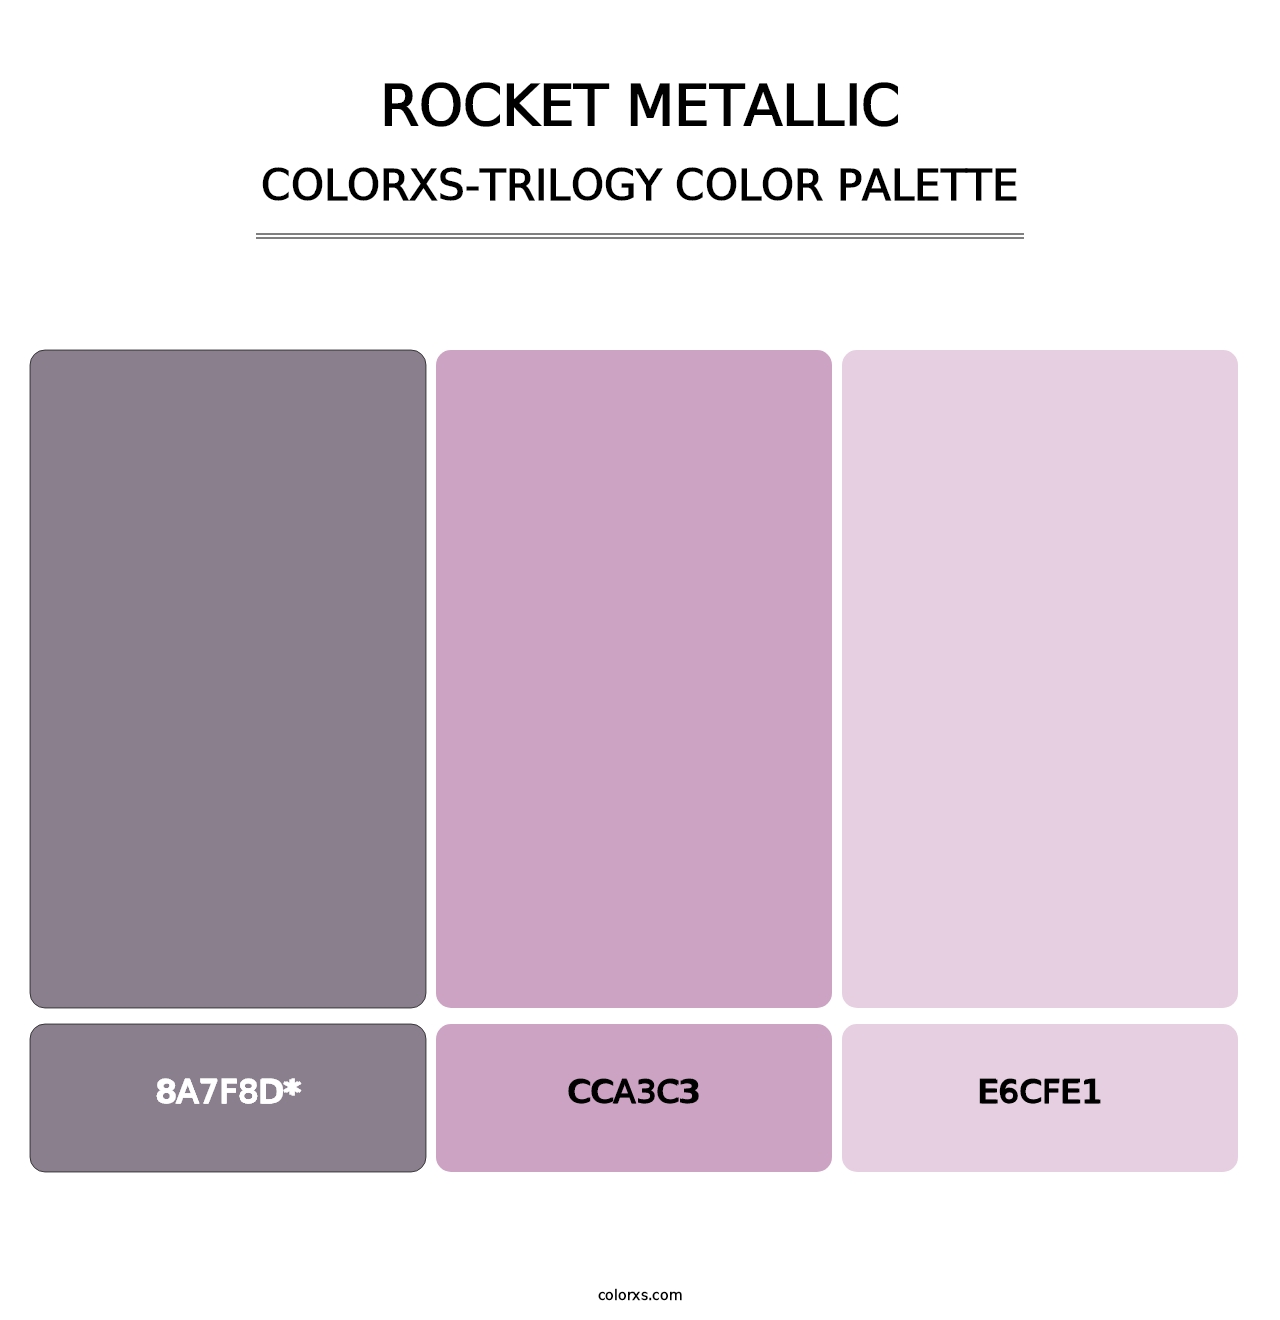 Rocket Metallic - Colorxs Trilogy Palette